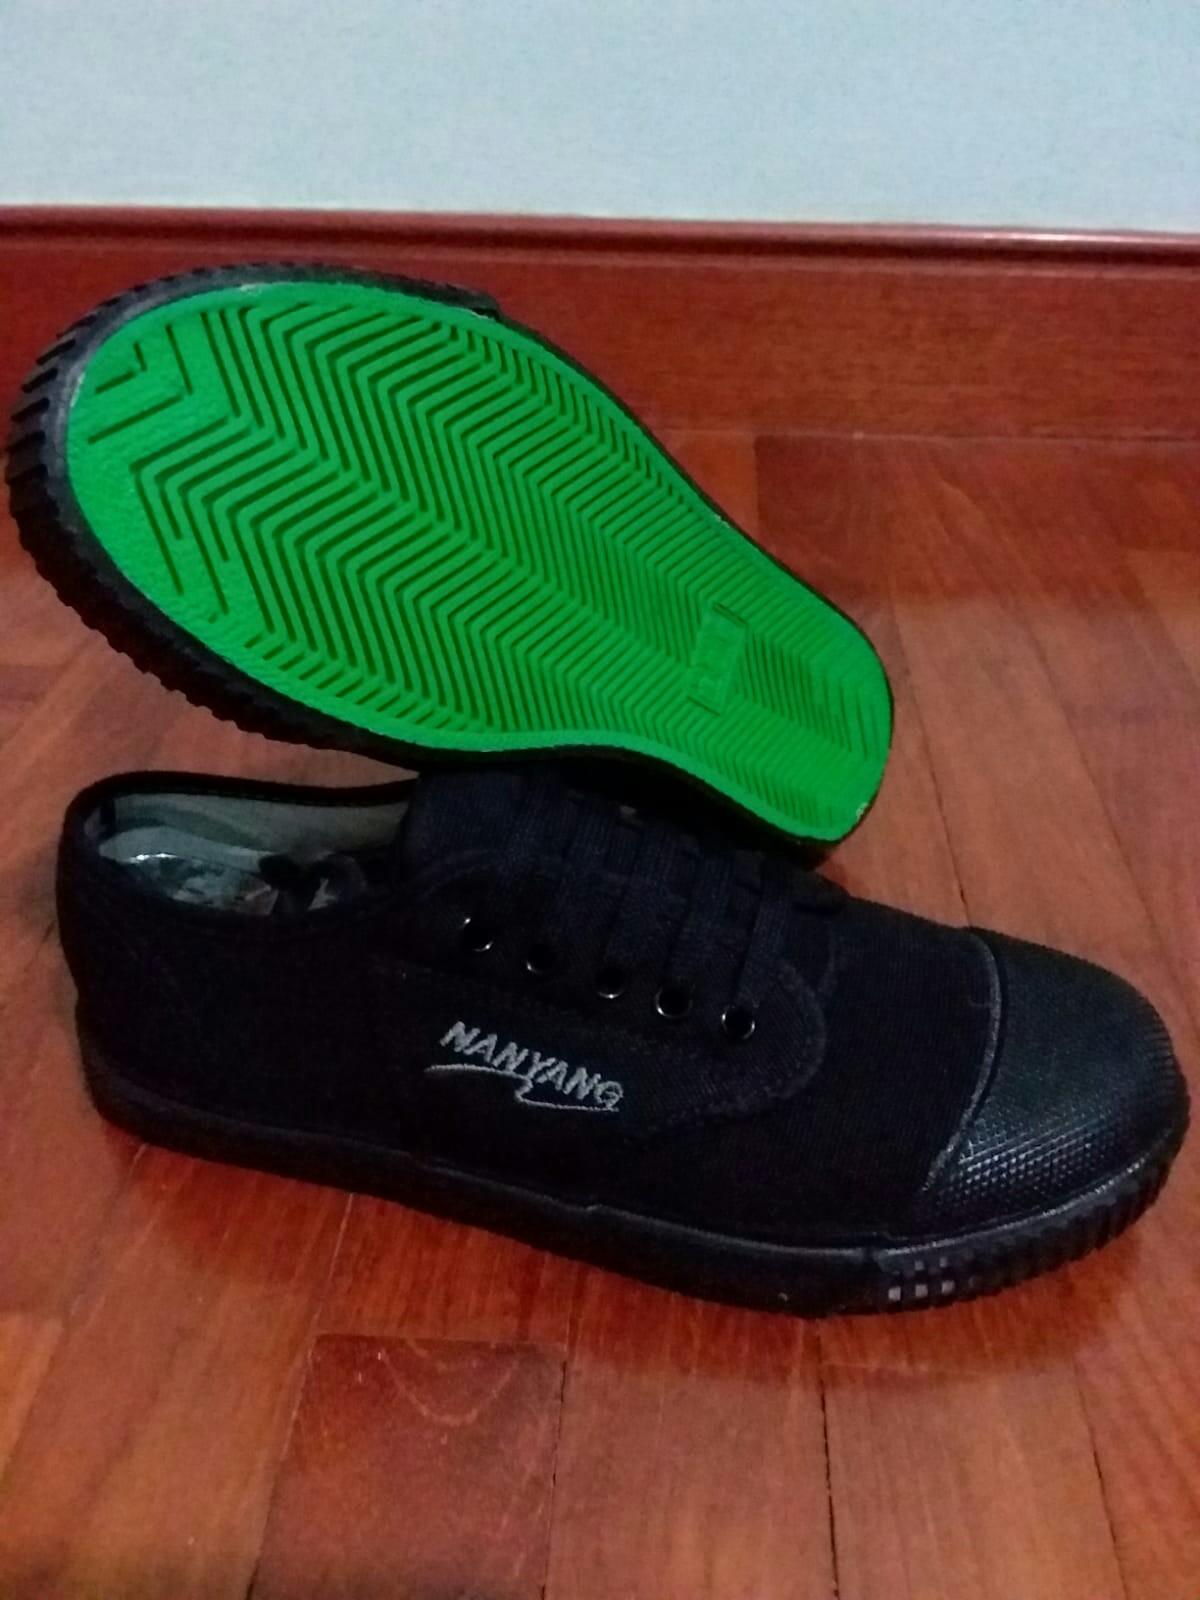 nanyang shoe